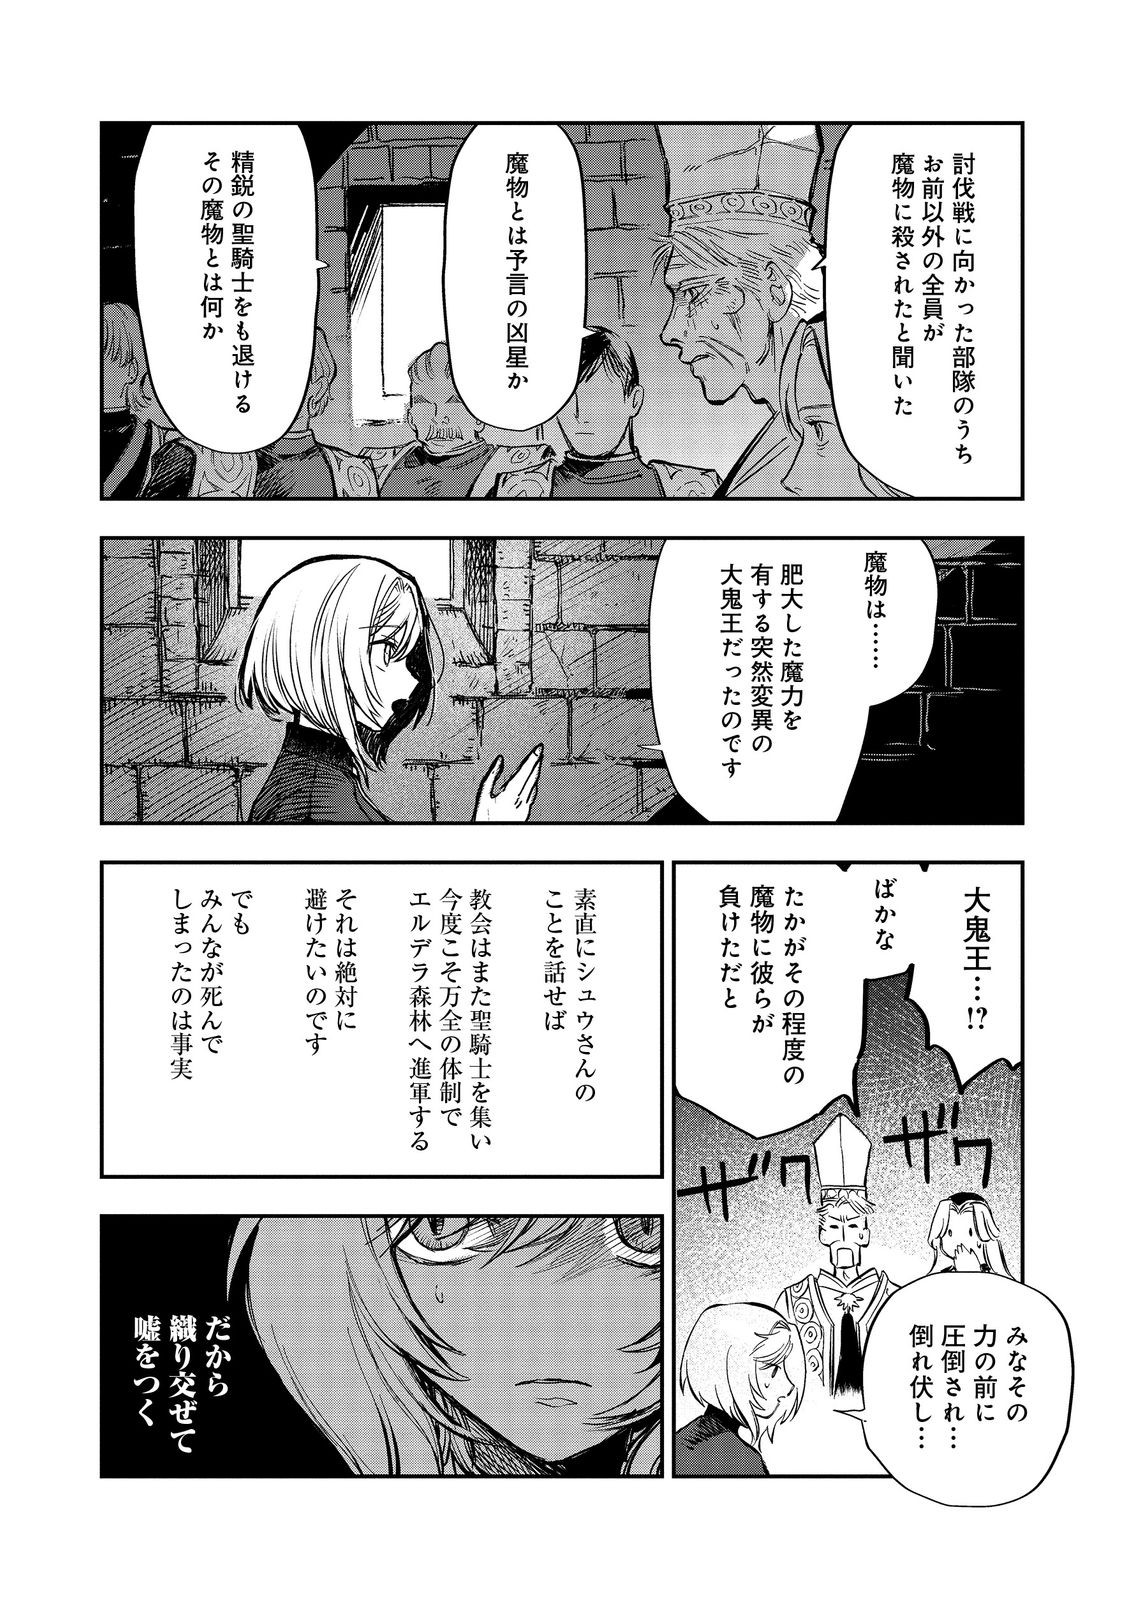 Meiou-sama ga Tooru no desu yo! - Chapter 13 - Page 3